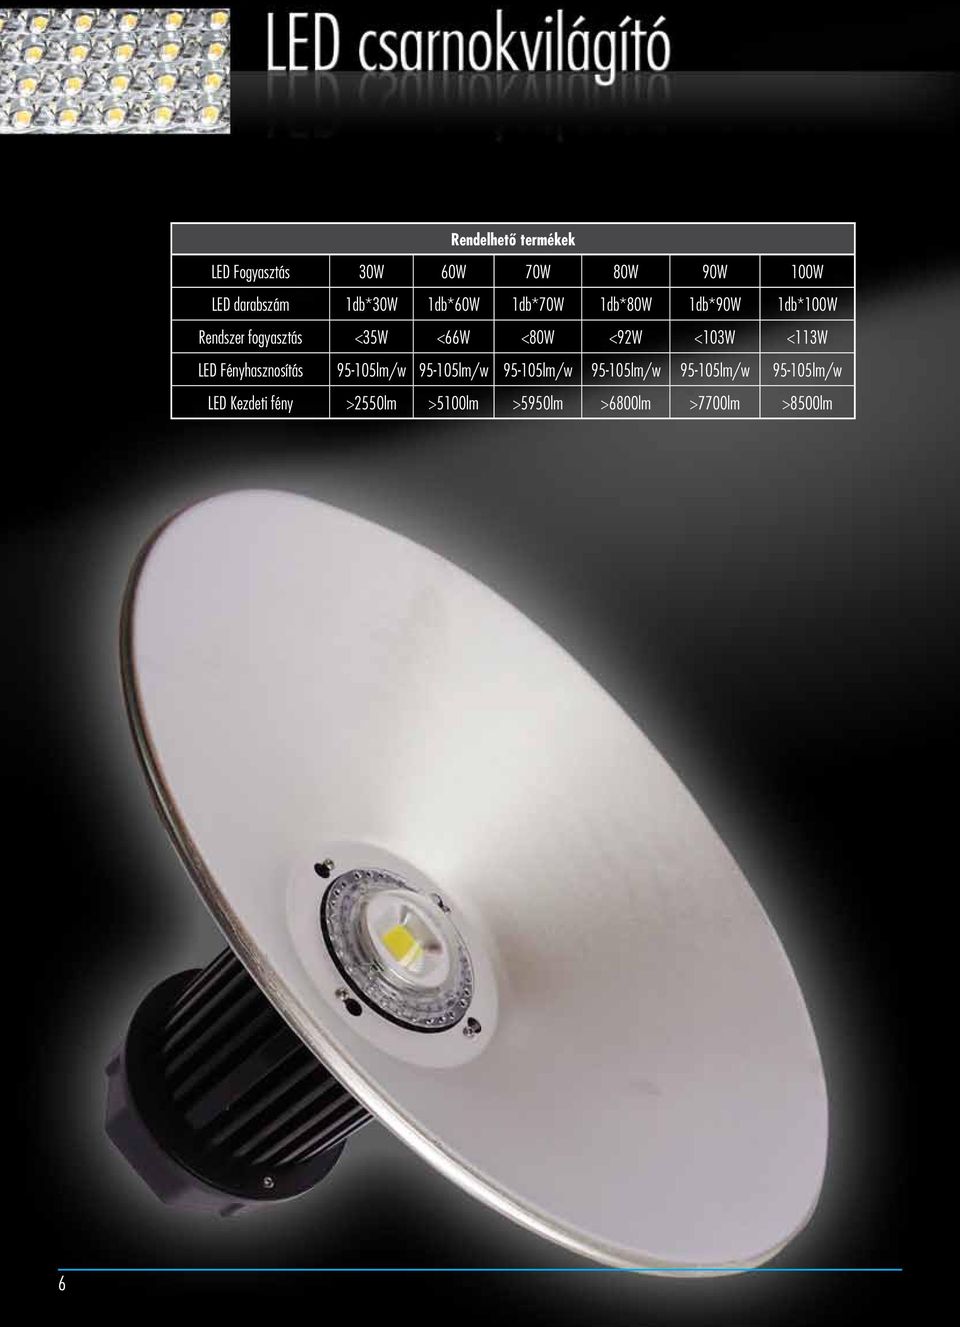 <103W <113W LED Fényhasznosítás 95-105lm/w 95-105lm/w 95-105lm/w 95-105lm/w